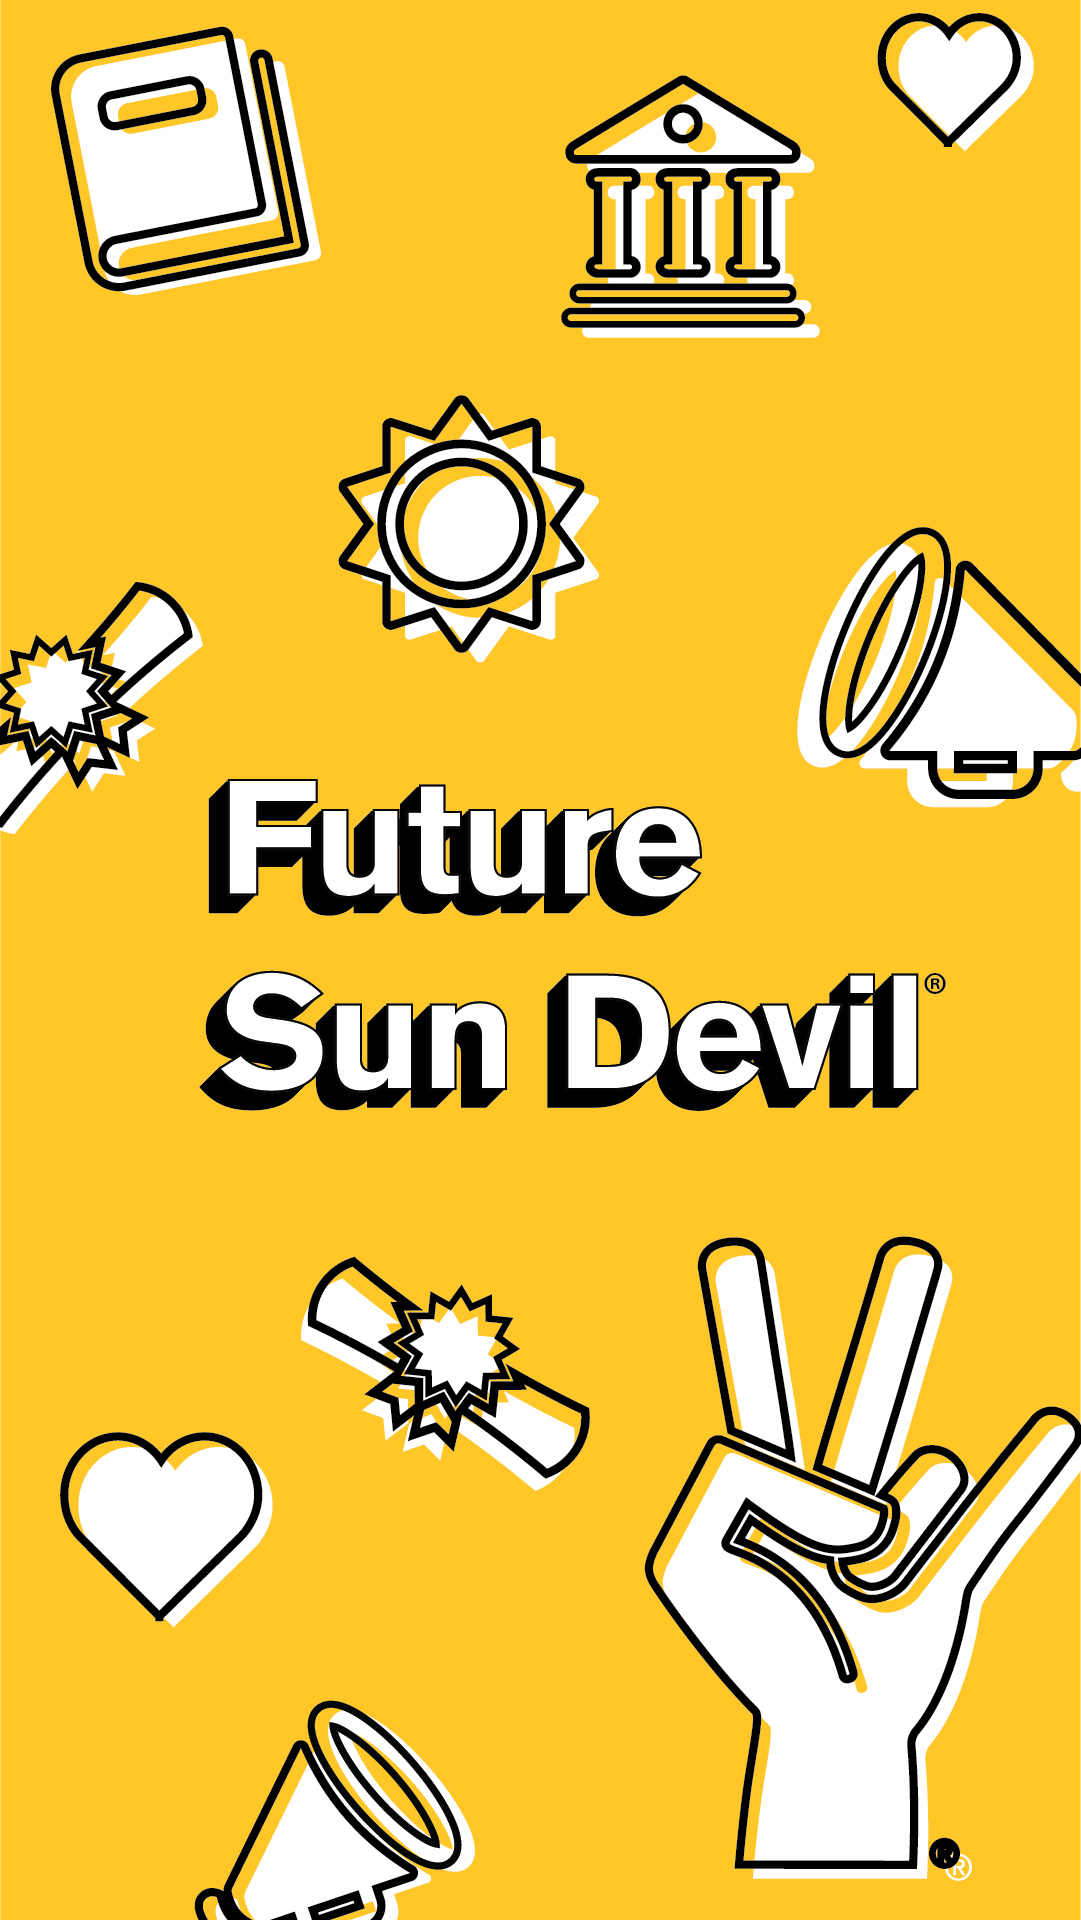 future sun devil wallpaper including ASU icons